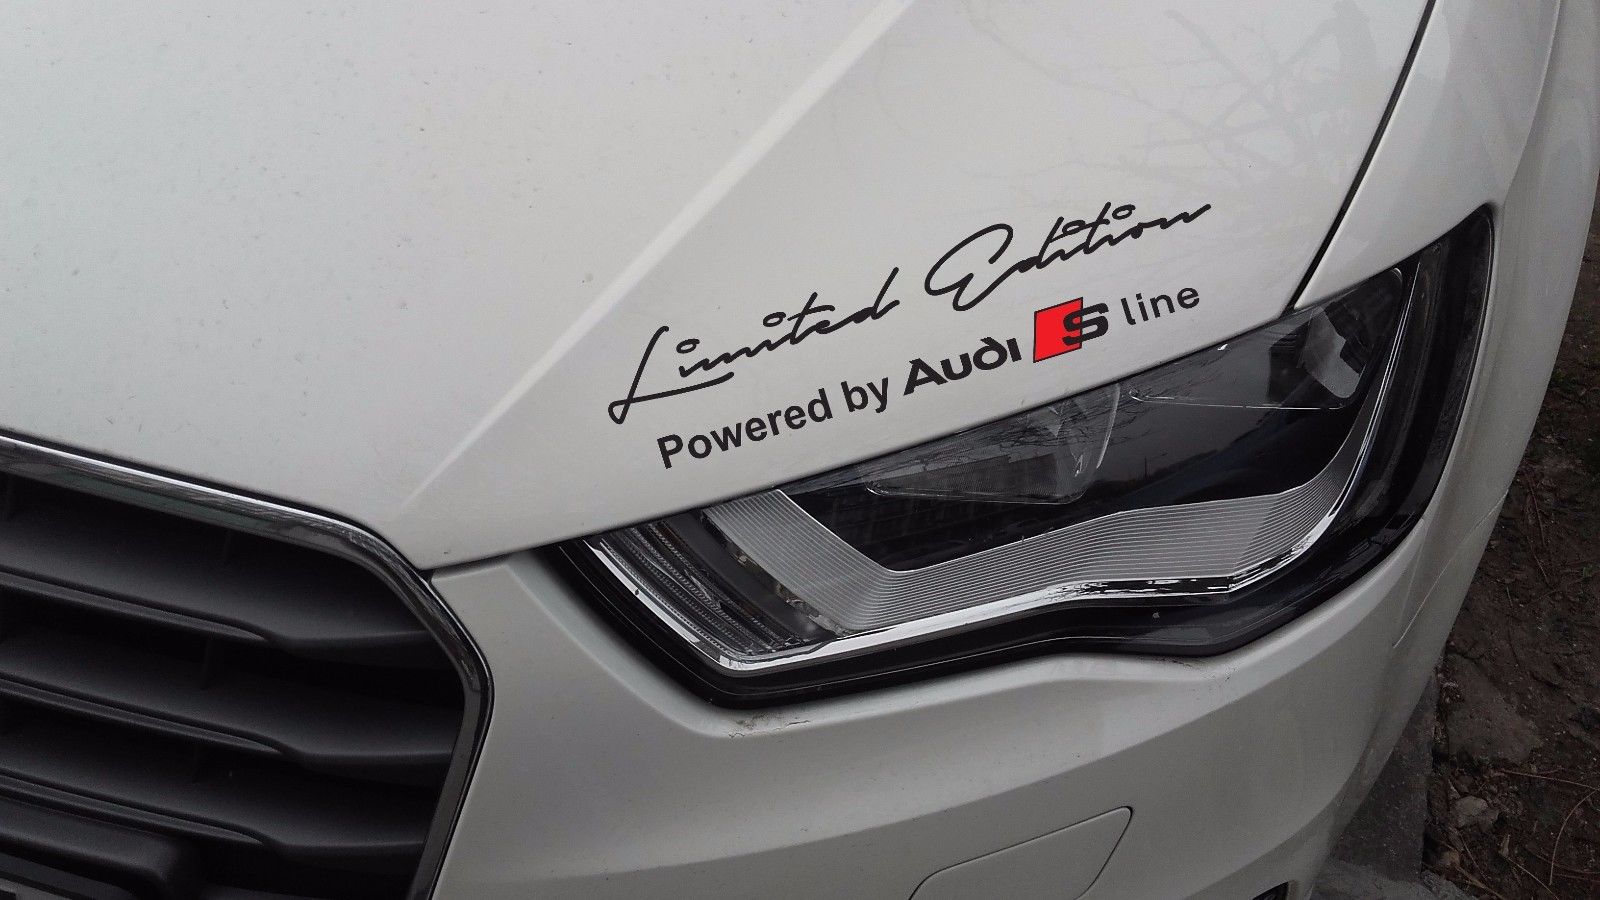 2 X Edición Limitada Audi S Line Secur Sticker Compatible con Audi S3 S4 S5 S6